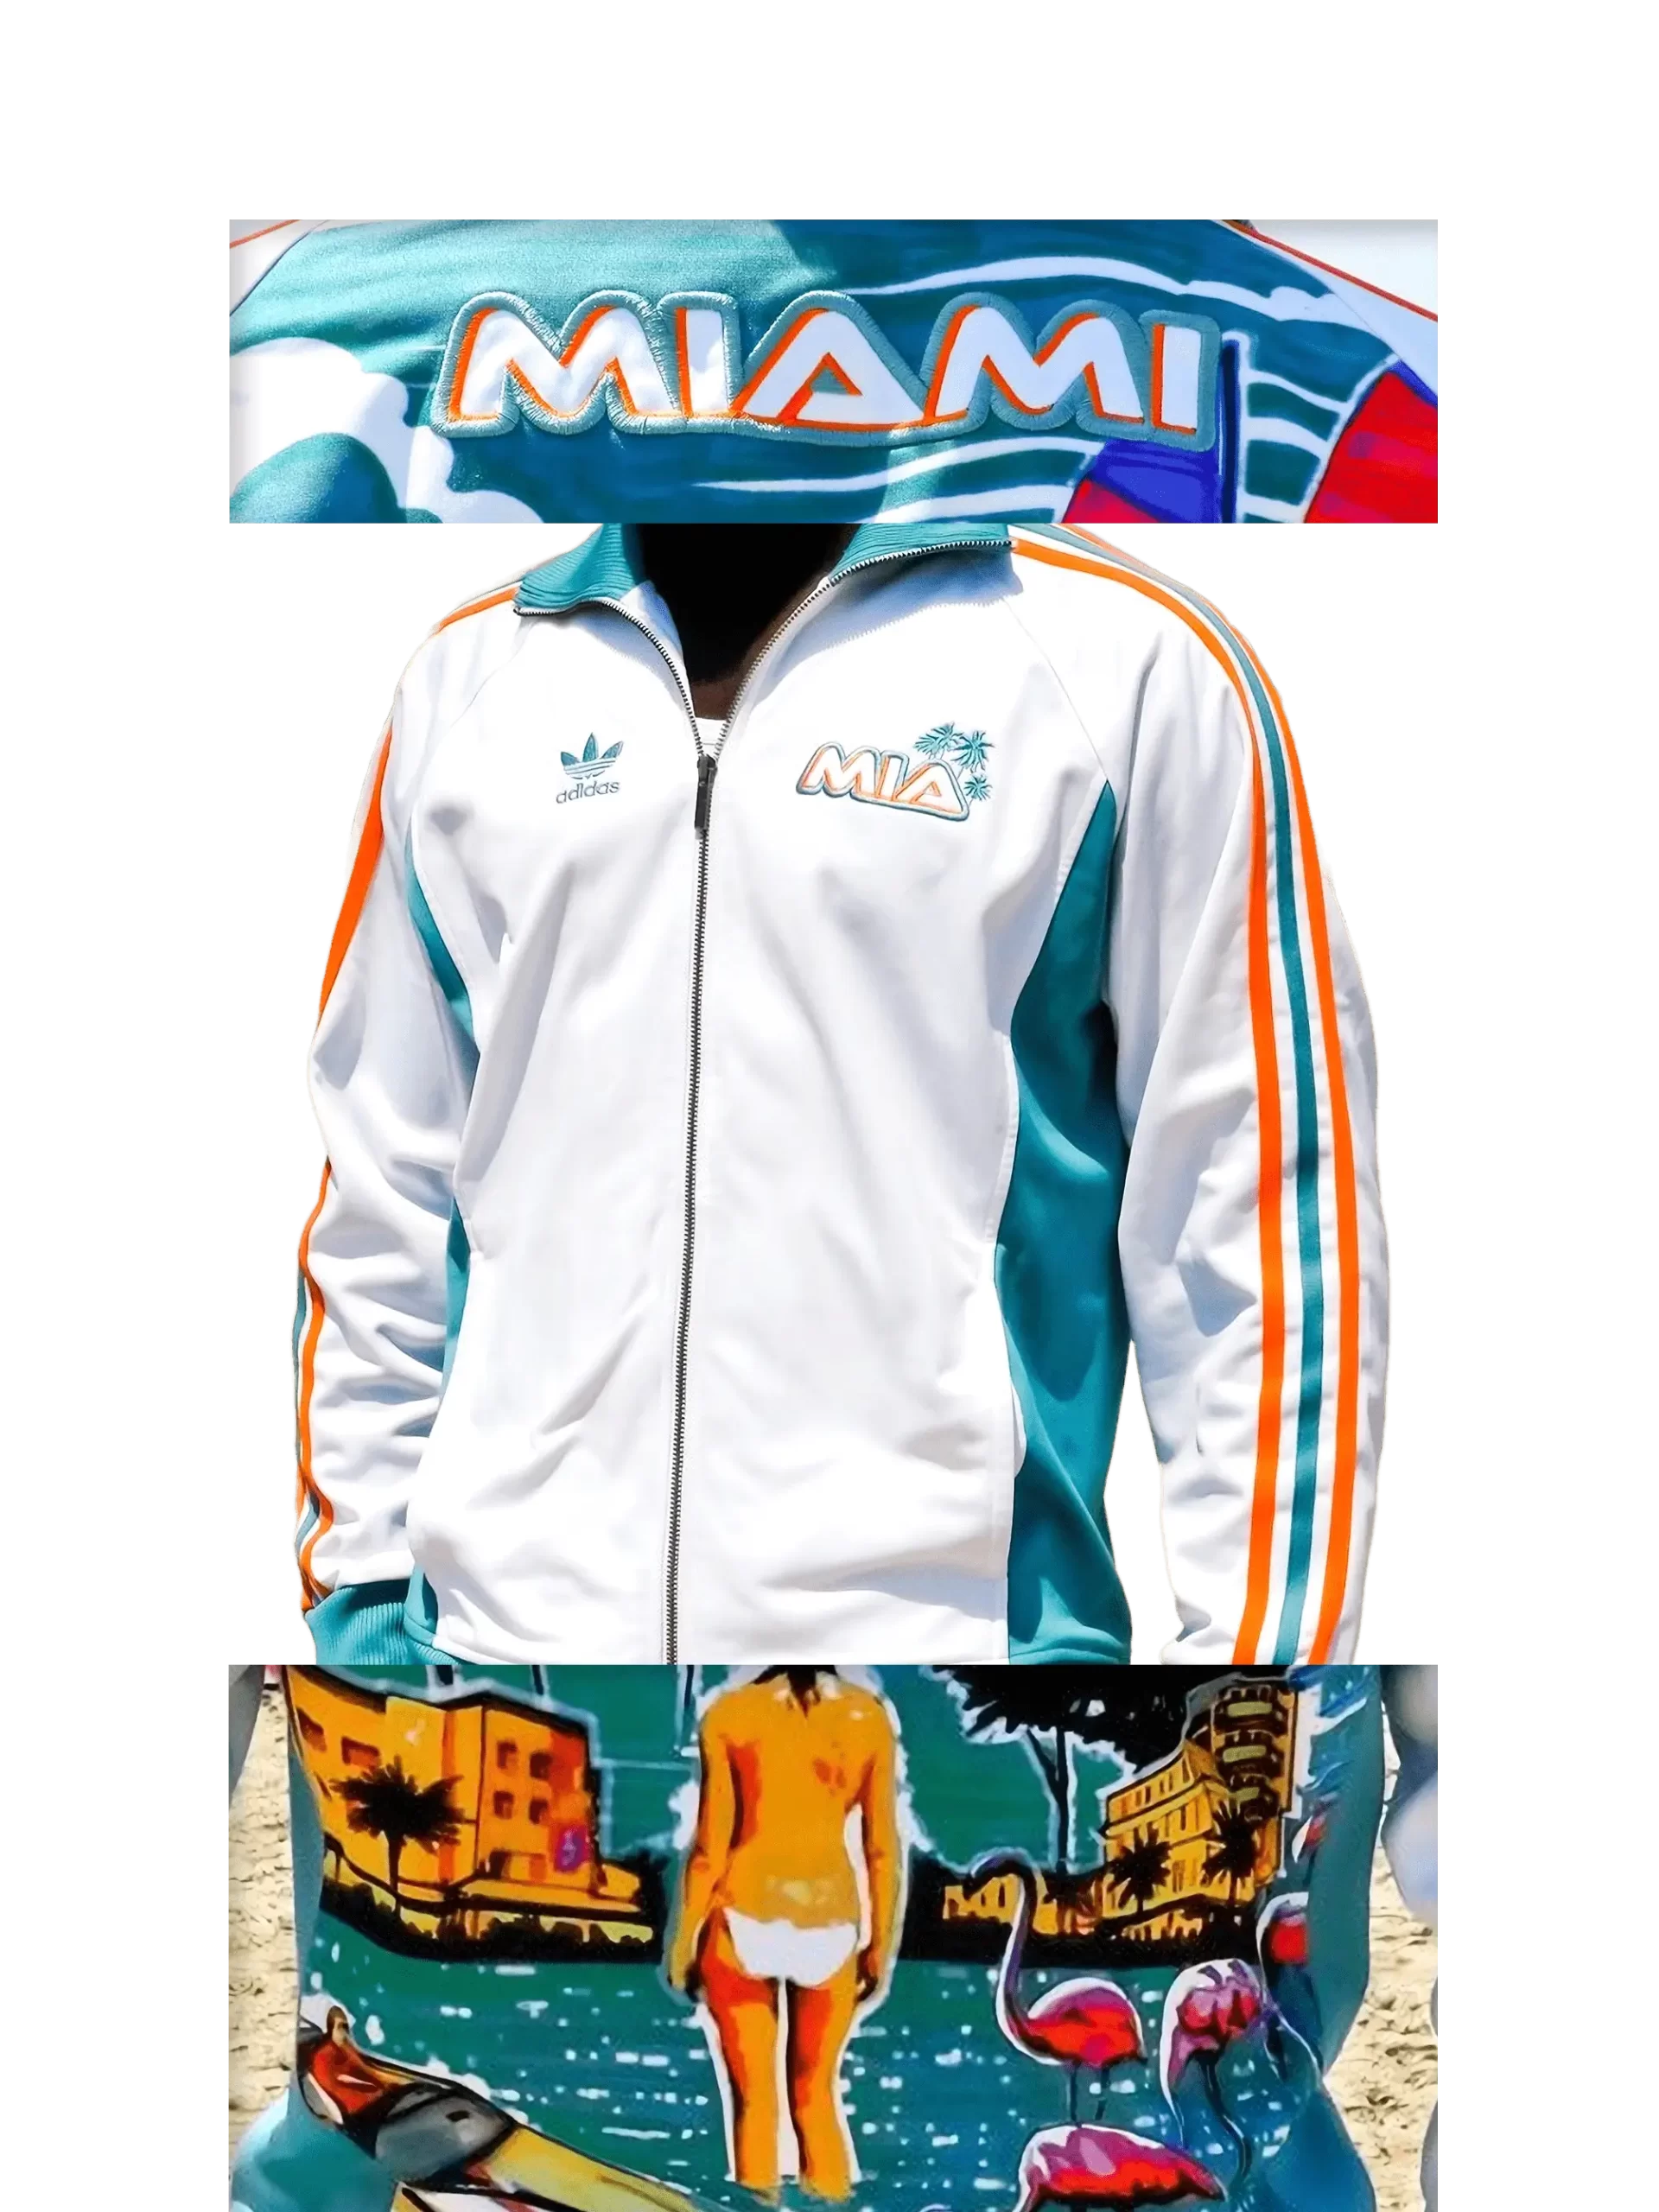 Men's 2006 Miami MIA Track Top by Adidas Originals: Lavishly (EnLawded.com file #lmchk55379ip2y123362kg9st)